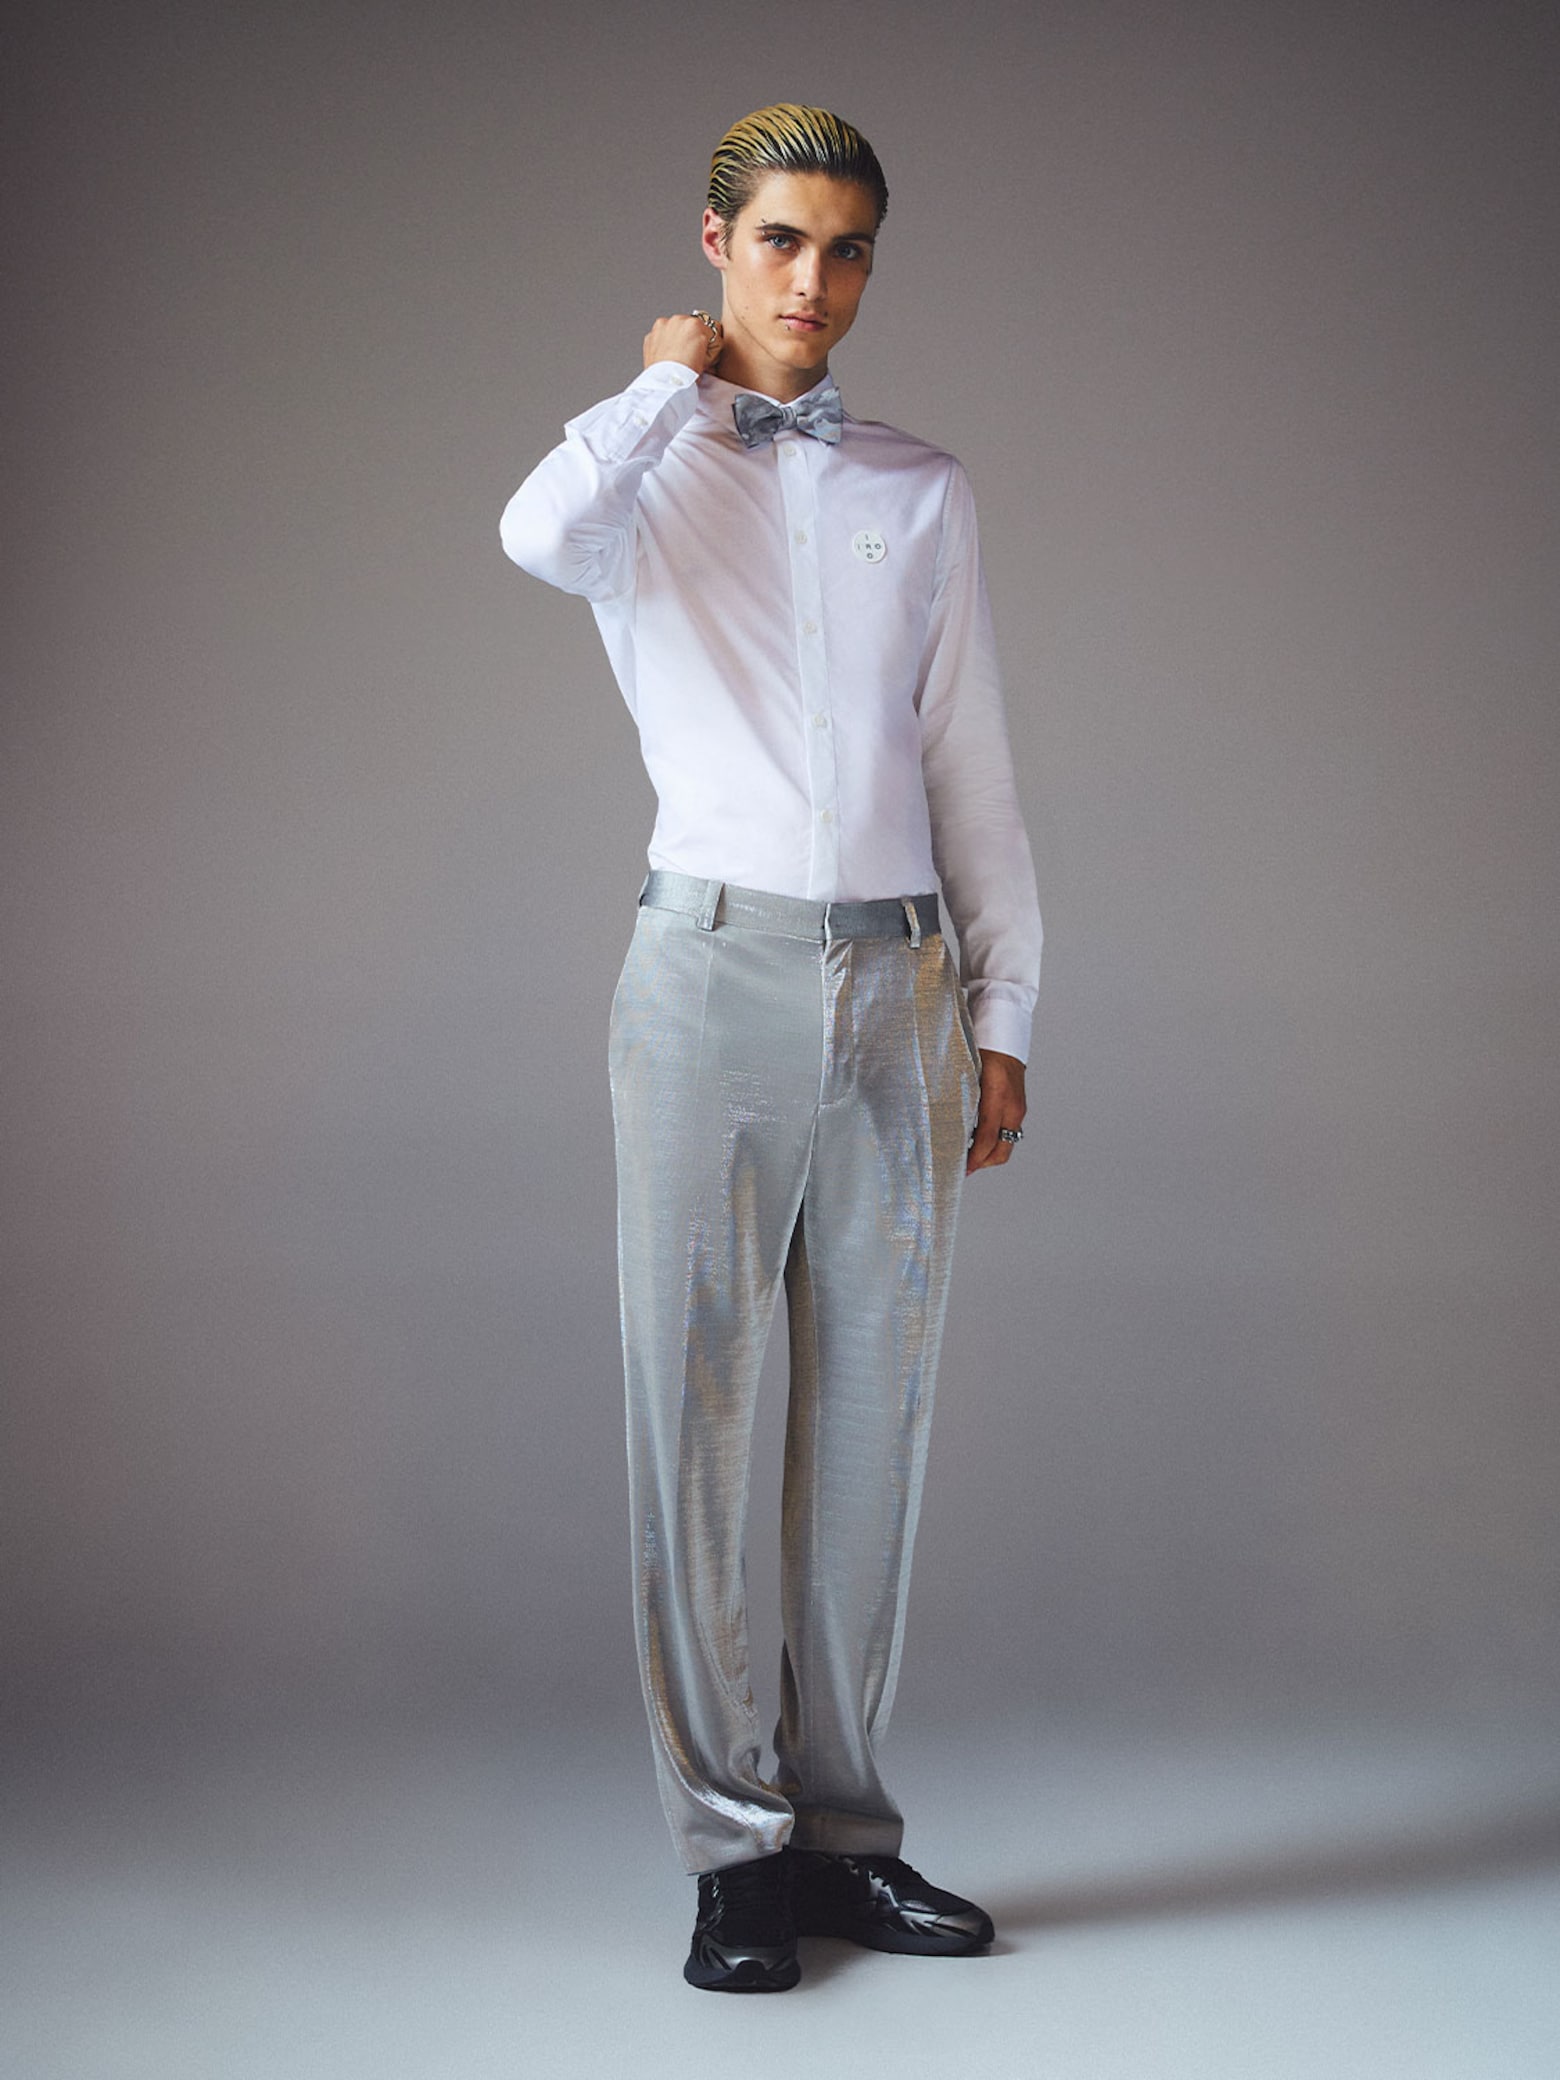 Sam - Classy Shiny Silver Pants Look